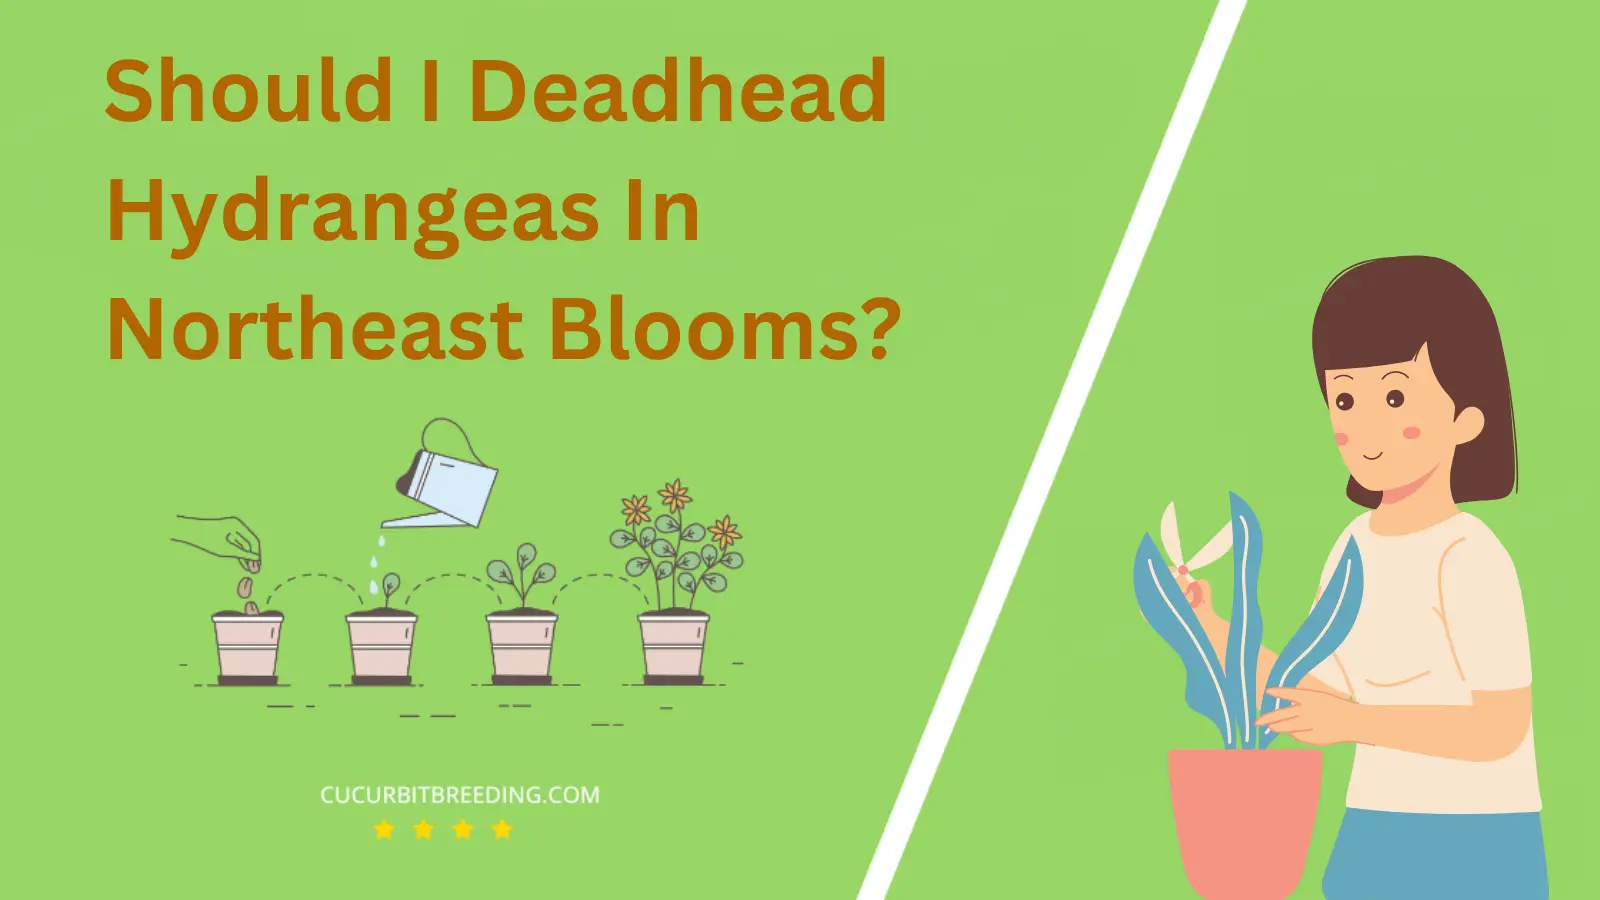 Should I Deadhead Hydrangeas In Northeast Blooms?